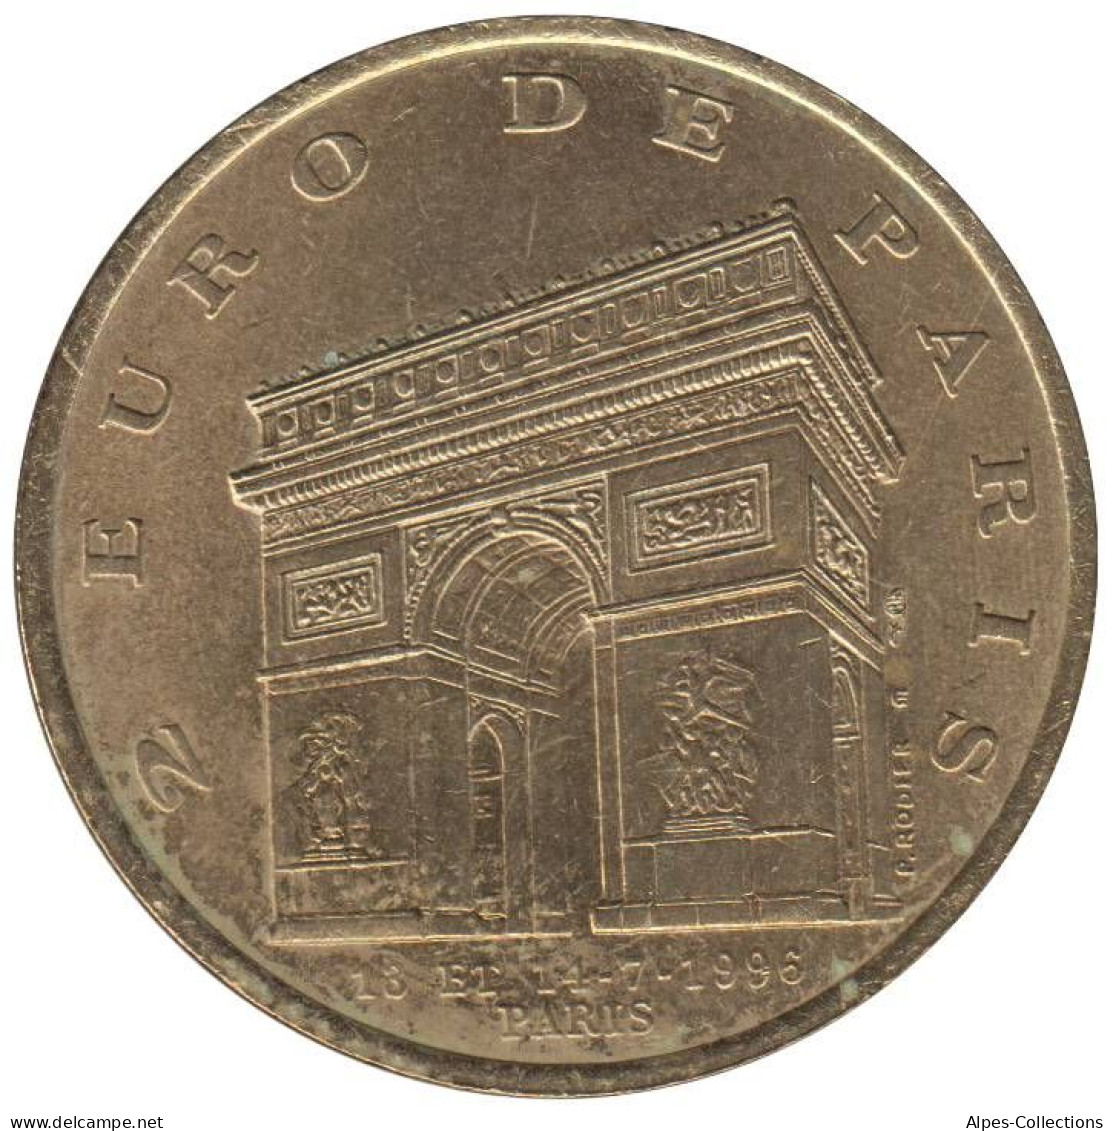 PARIS - EU0020.4 - 2 EURO DES VILLES - Réf: T194 - 1996 - Euros Of The Cities